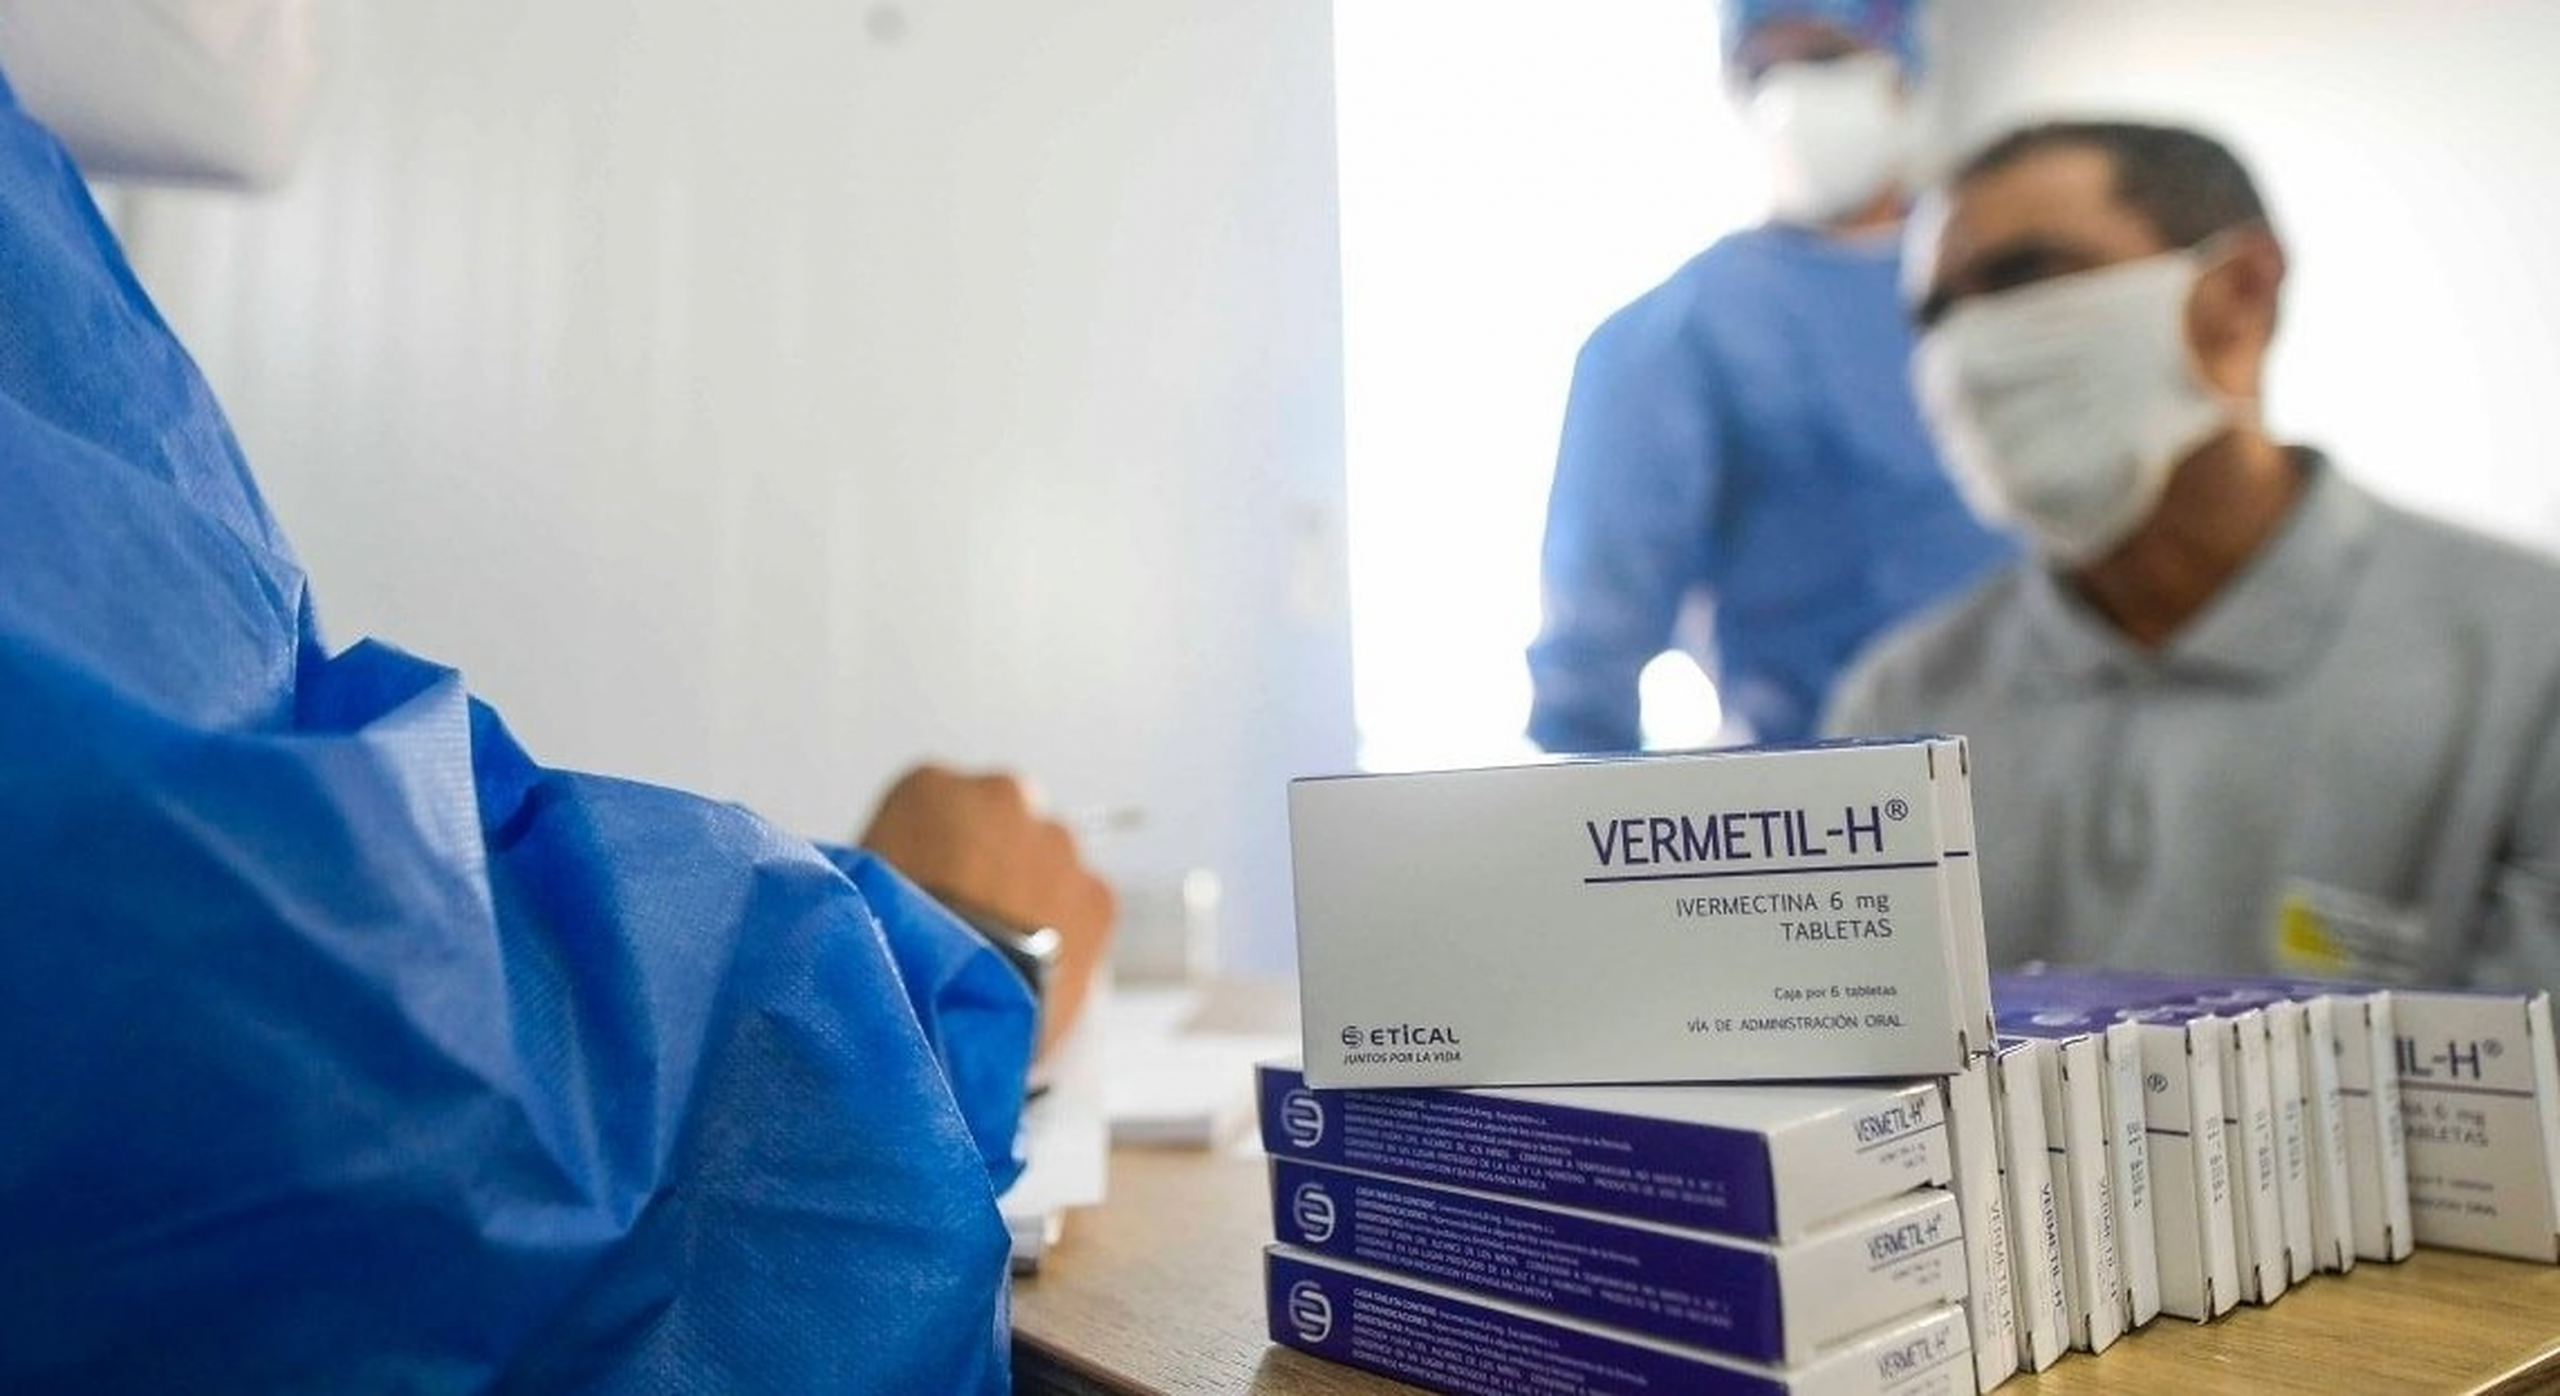 Franța și Olanda au aprobat Ivermectina pentru uz uman încă din 2016. Zeci de studii demonstrează eficiența crescută în tratarea Covid-19